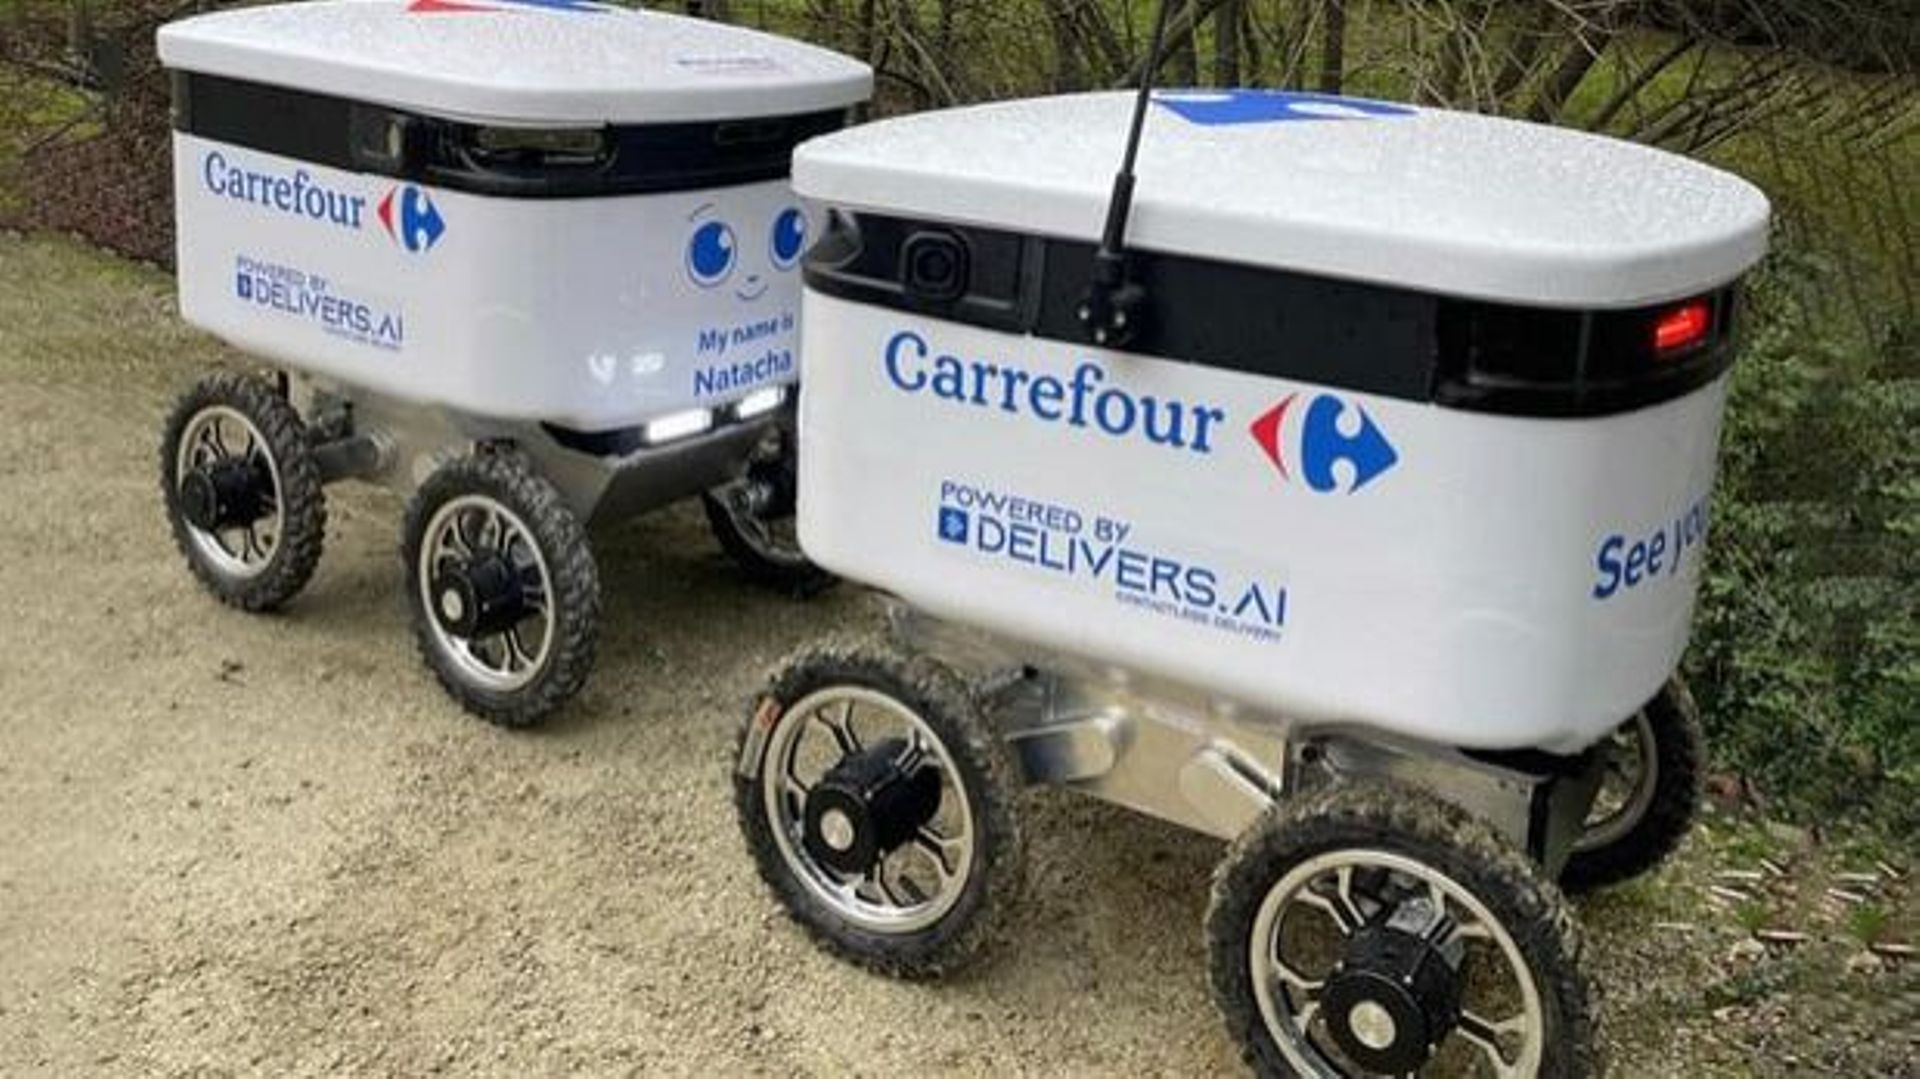 Le robot livreur Carrefour est en test actuellement.